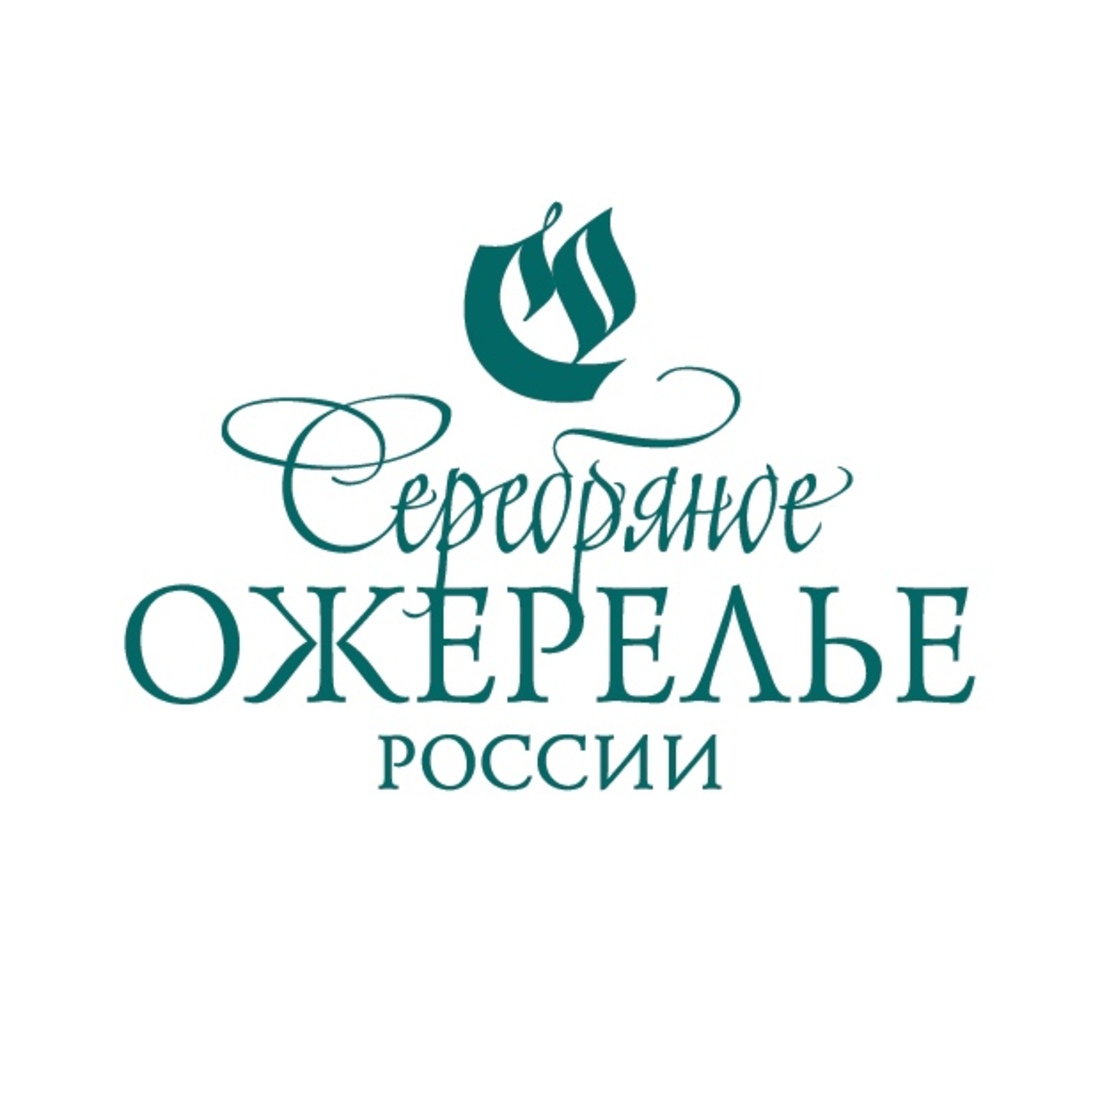 В Коми обсудили проект «Серебряное ожерелье России» 